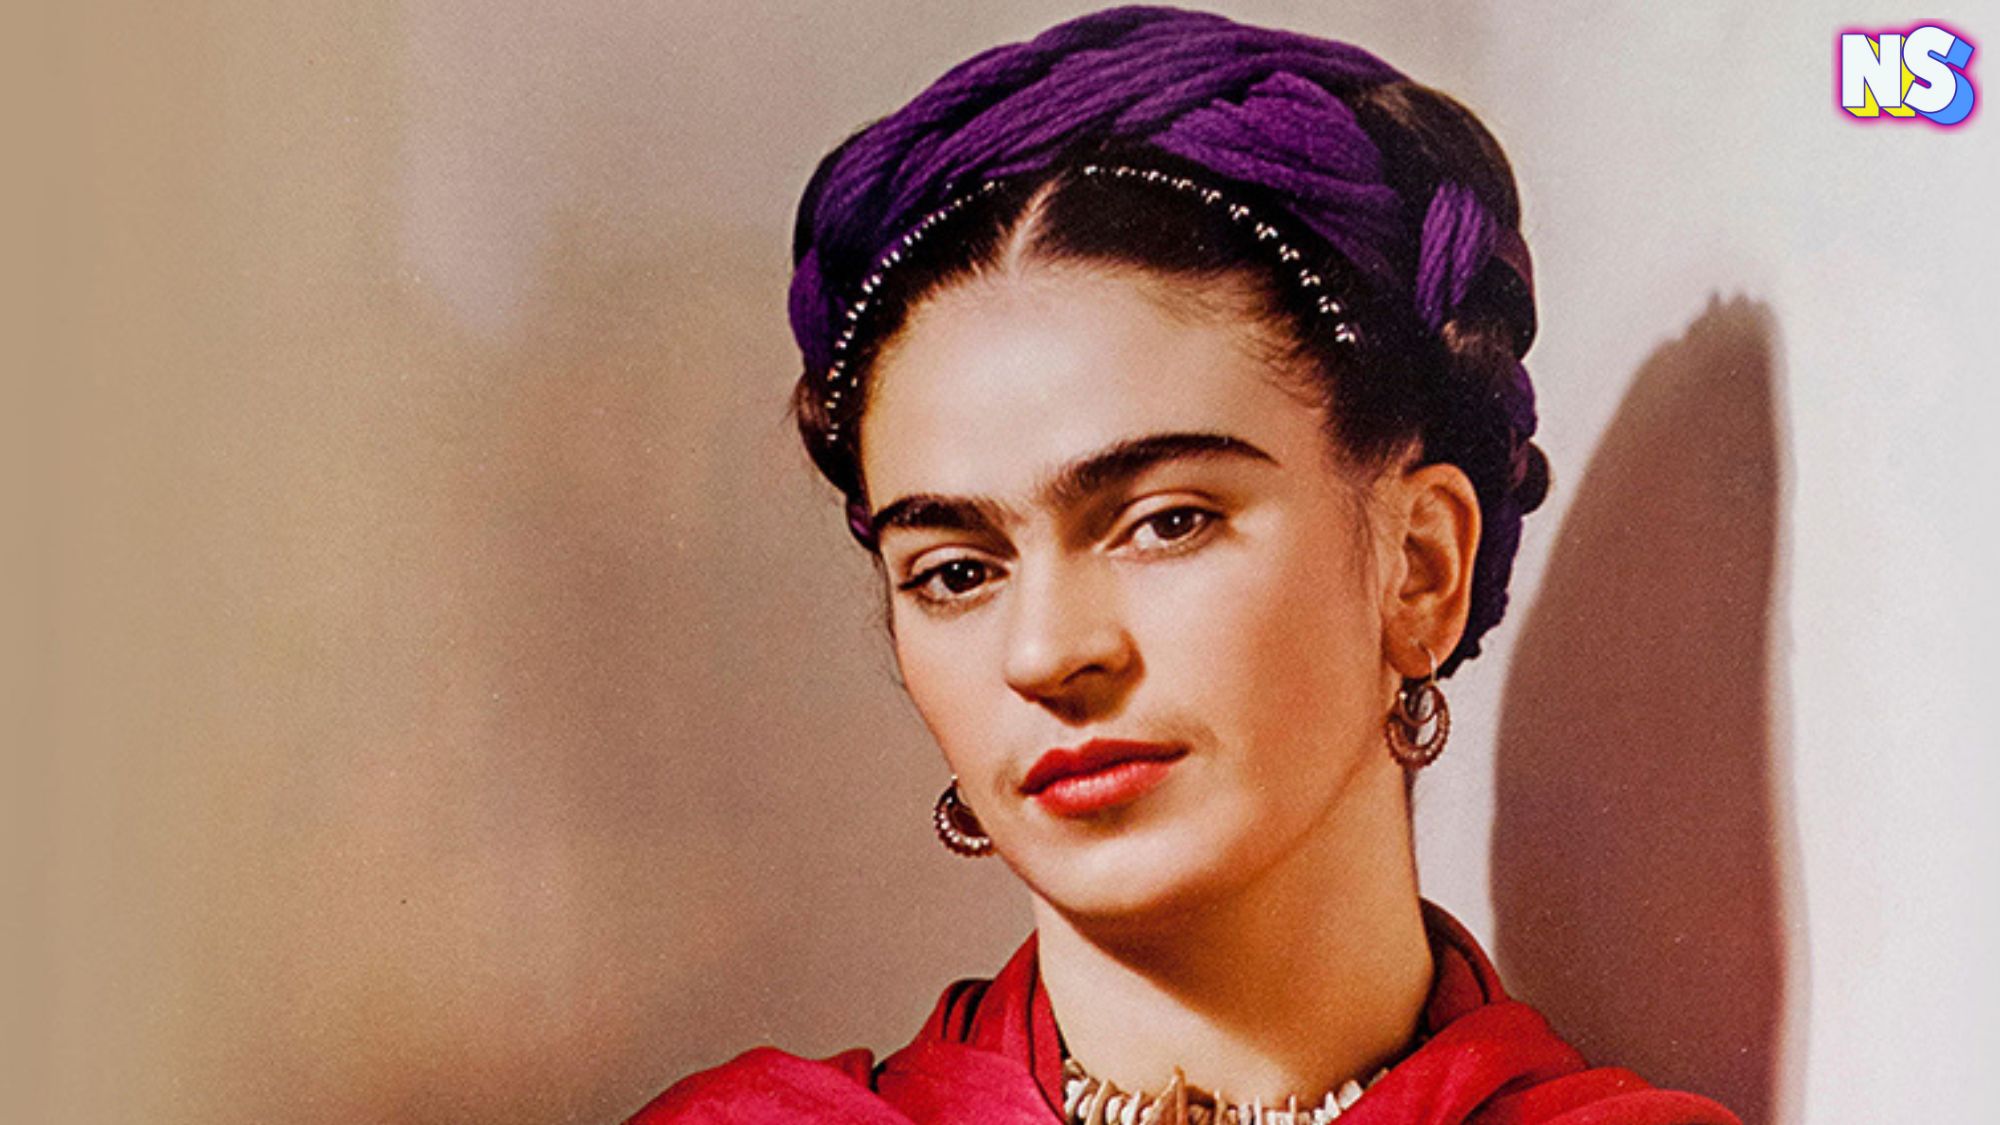 La vida de Frida Kahlol estuvo marcada por el infortunio de sufrir un grave accidente de autobús en su juventud que la mantuvo postrada en cama durante largos periodos, llegando a someterse hasta a 32 operaciones quirúrgicas.3​ Llevó una vida poco convenciona.